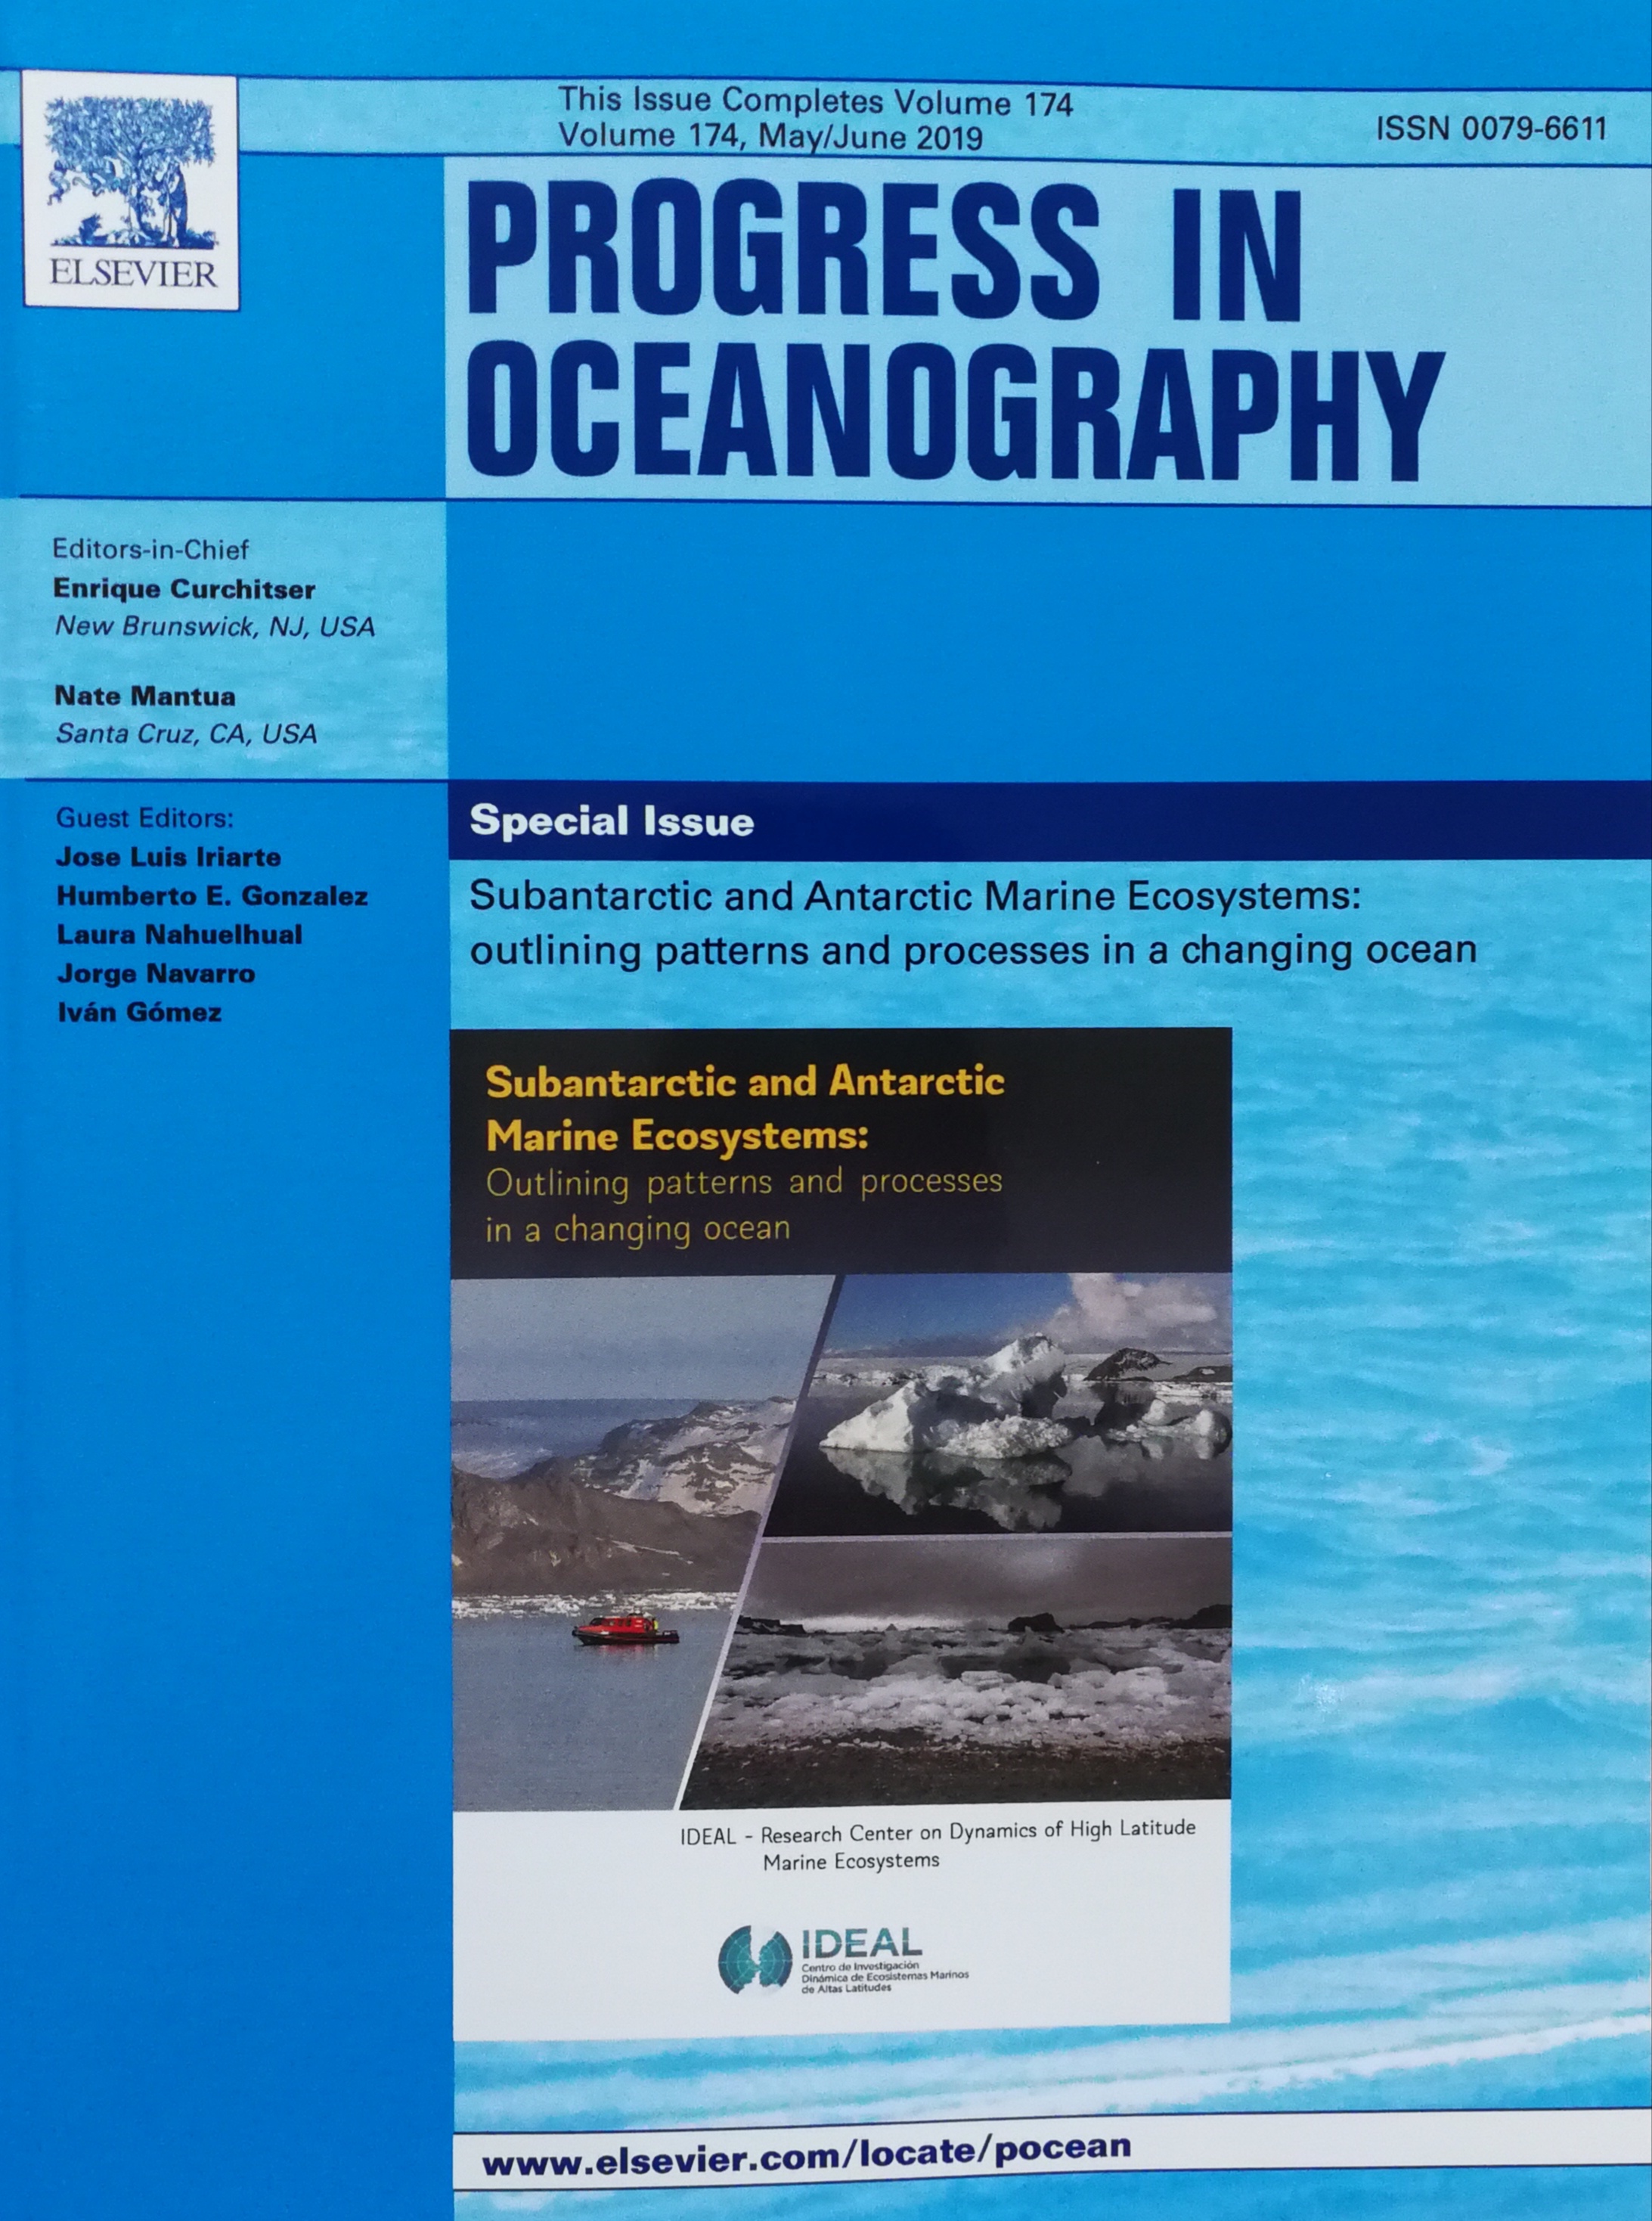 PROGRESS IN OCEANOGRAPHY